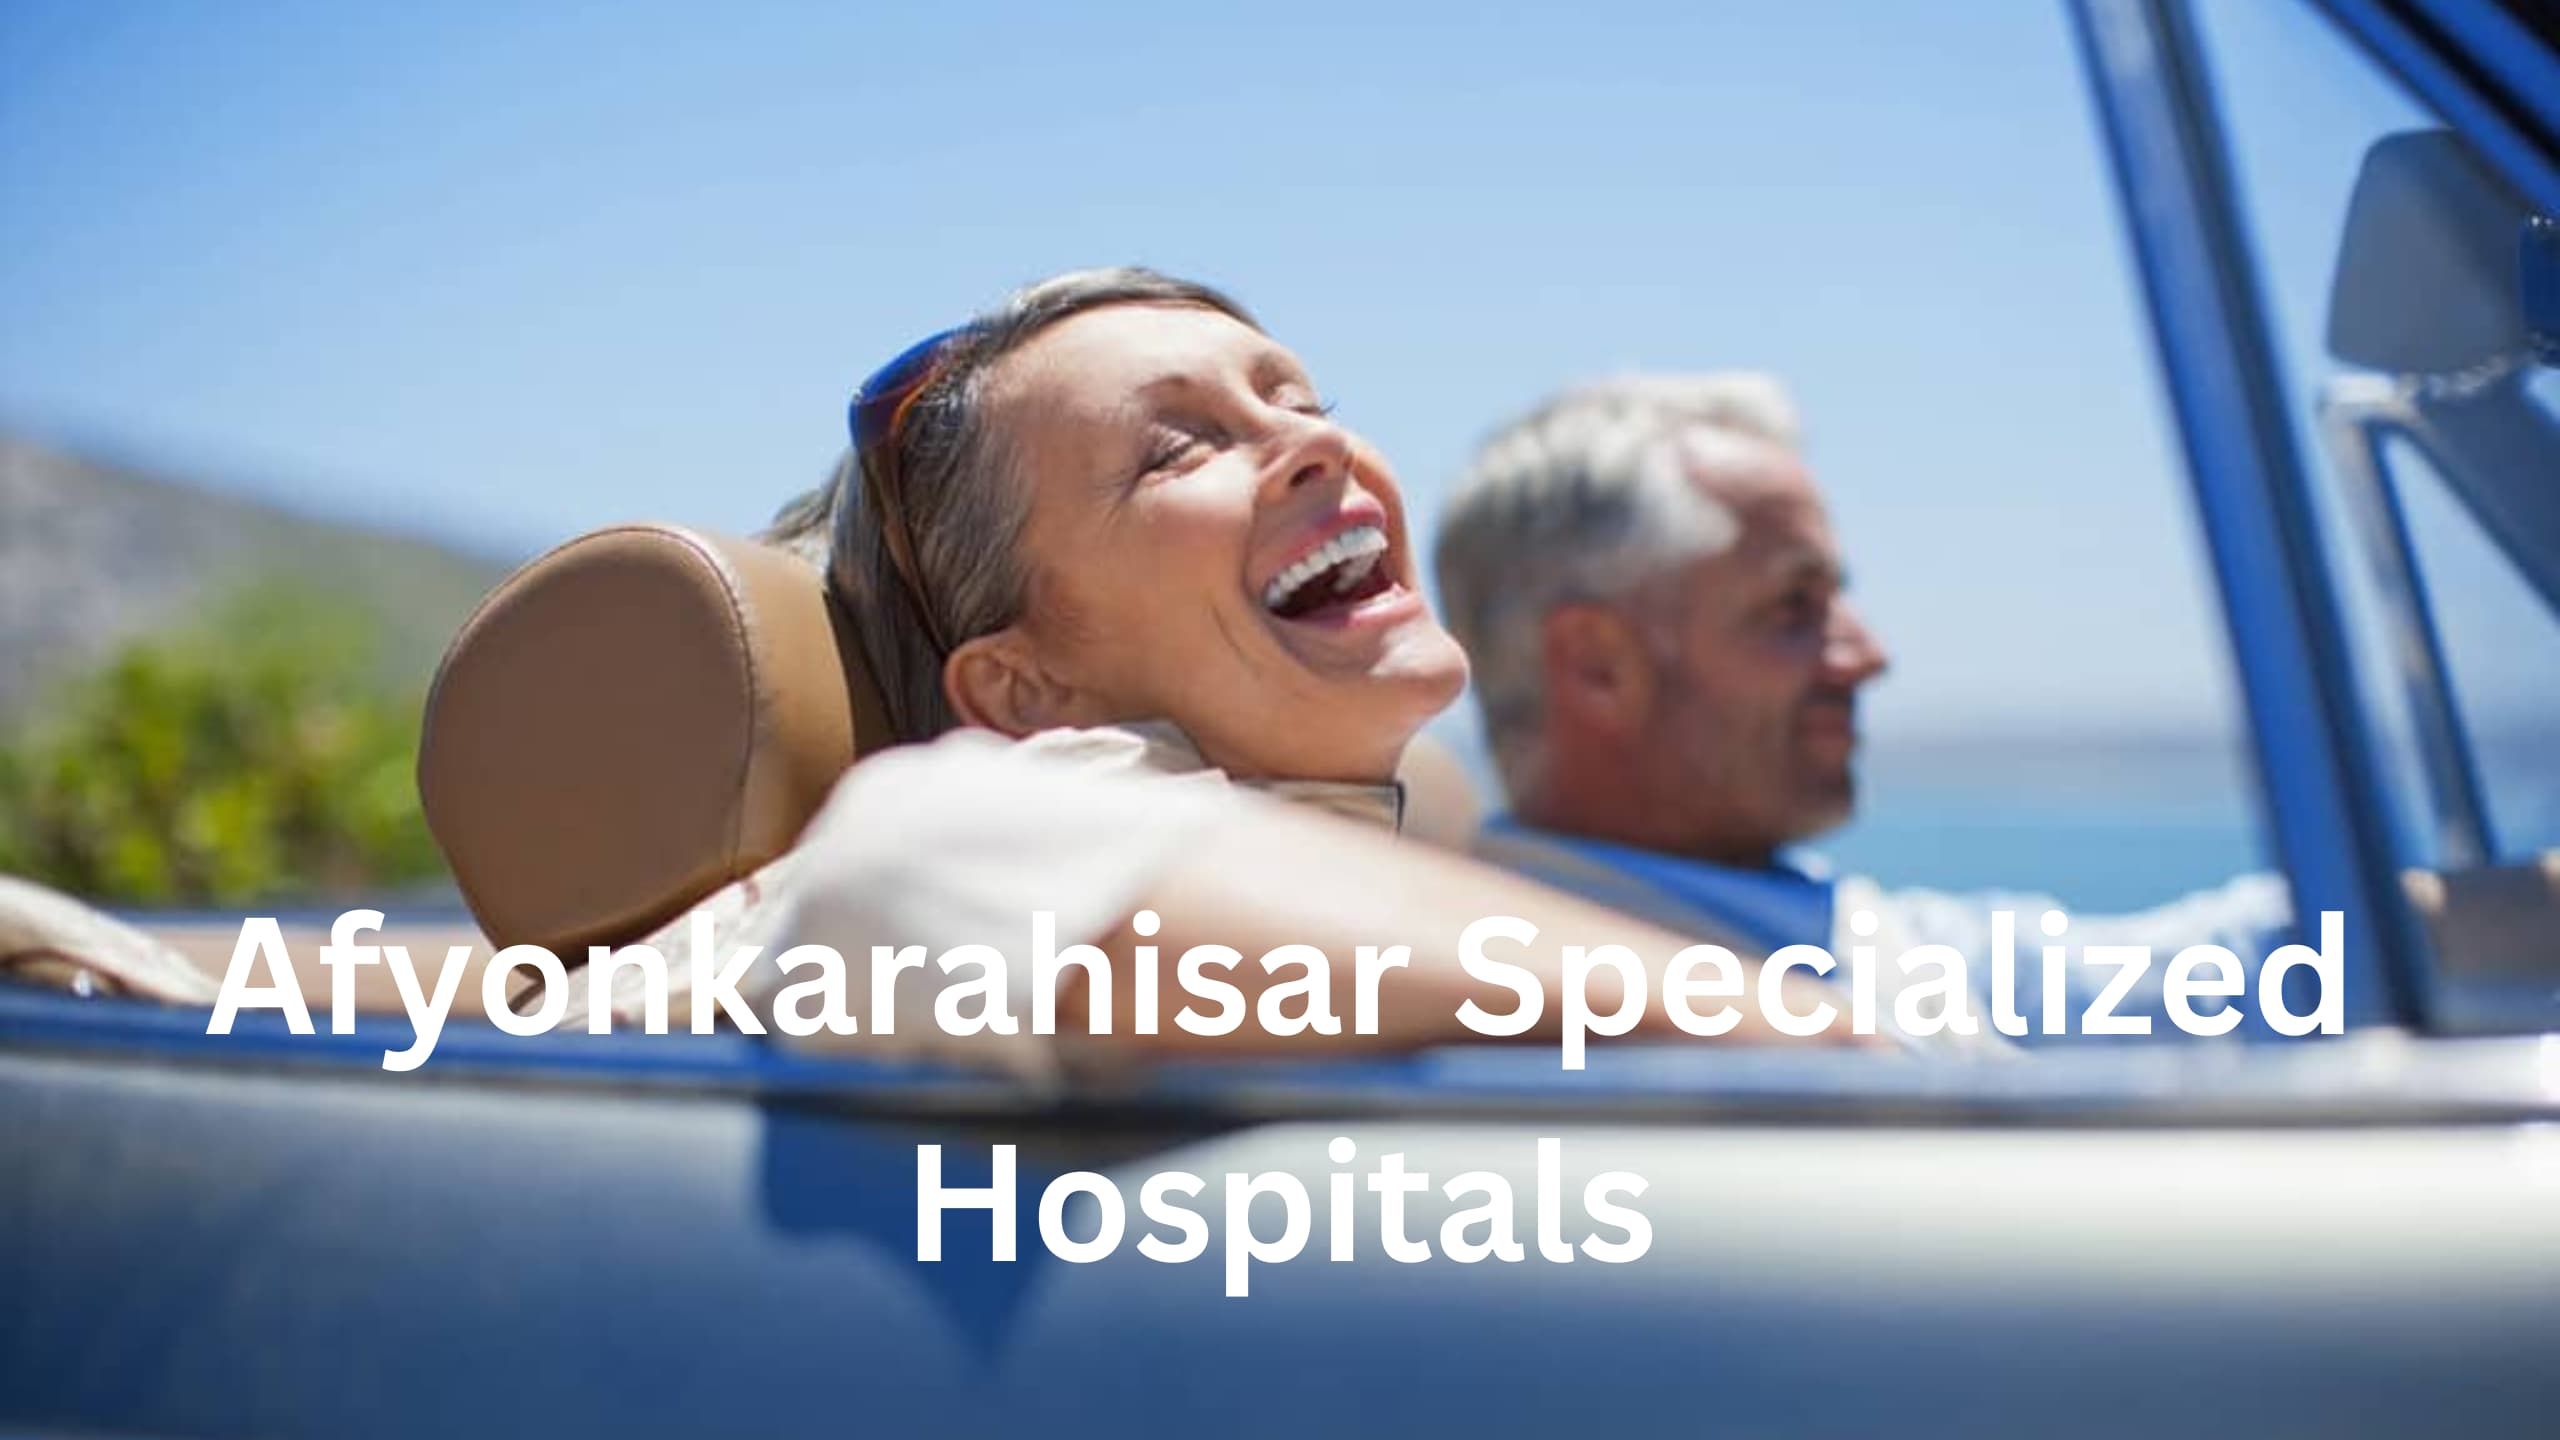 Afyonkarahisar Specialized Hospitals